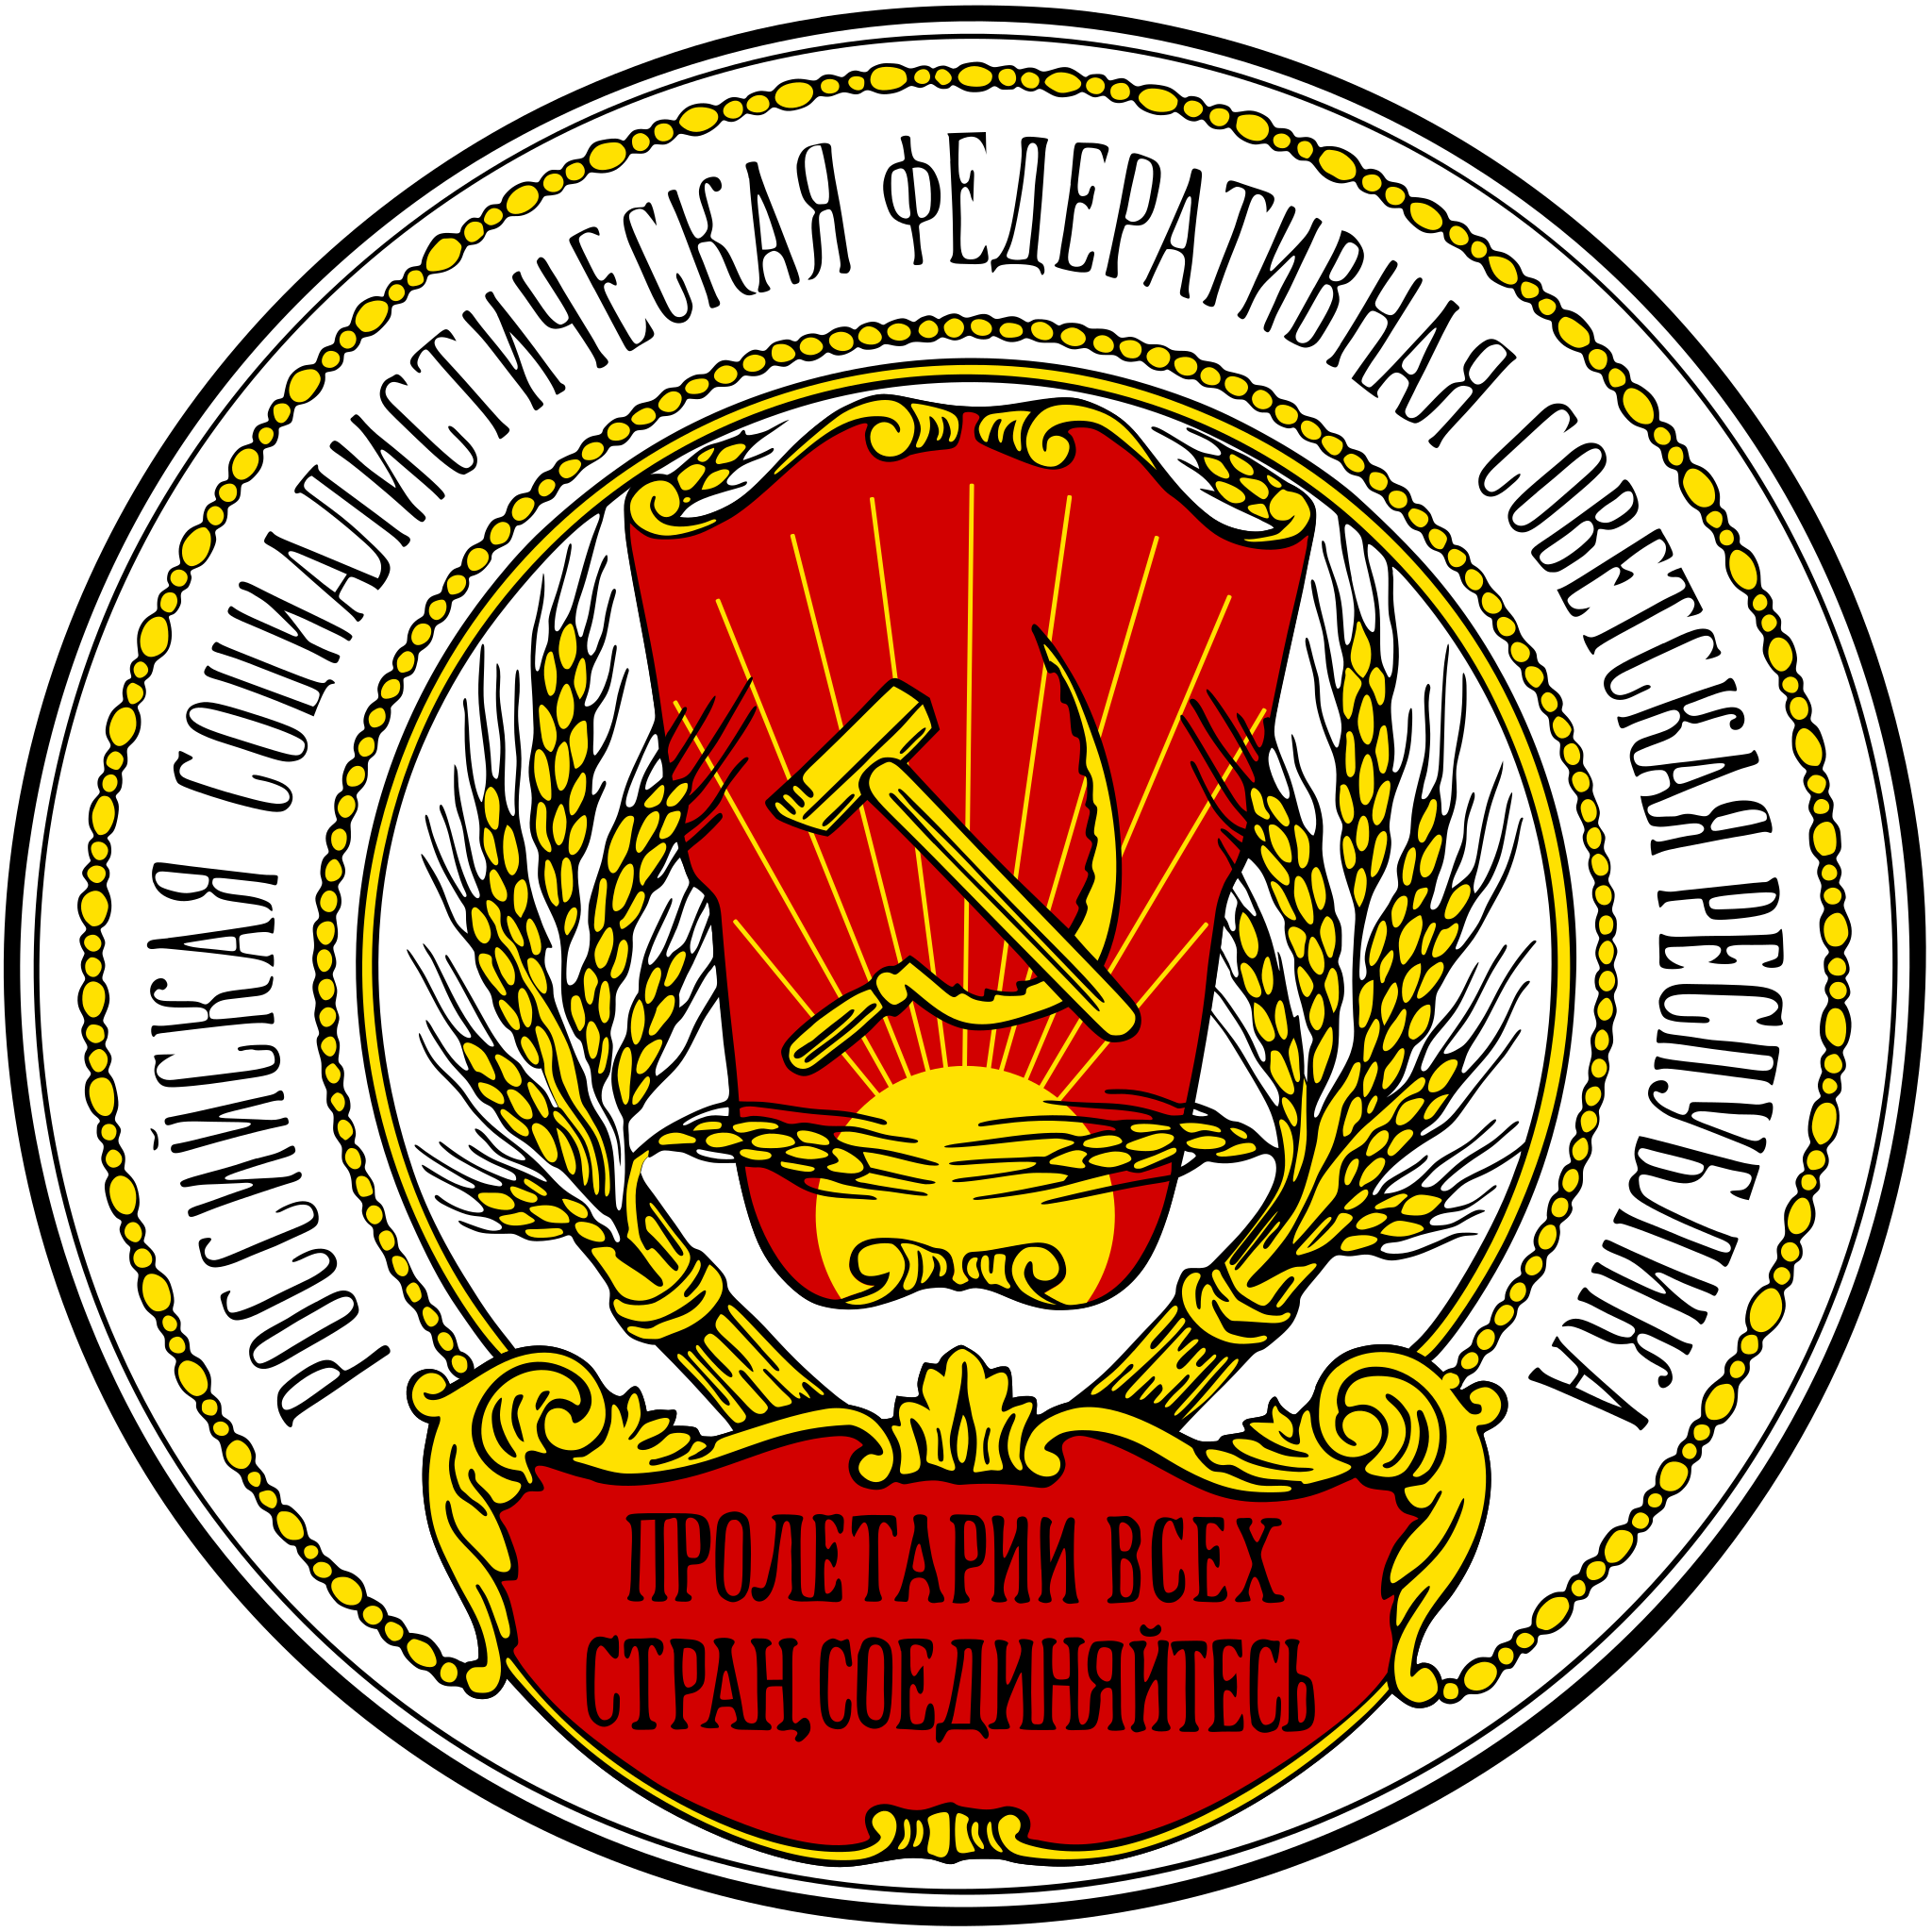 俄罗斯国徽(1918年